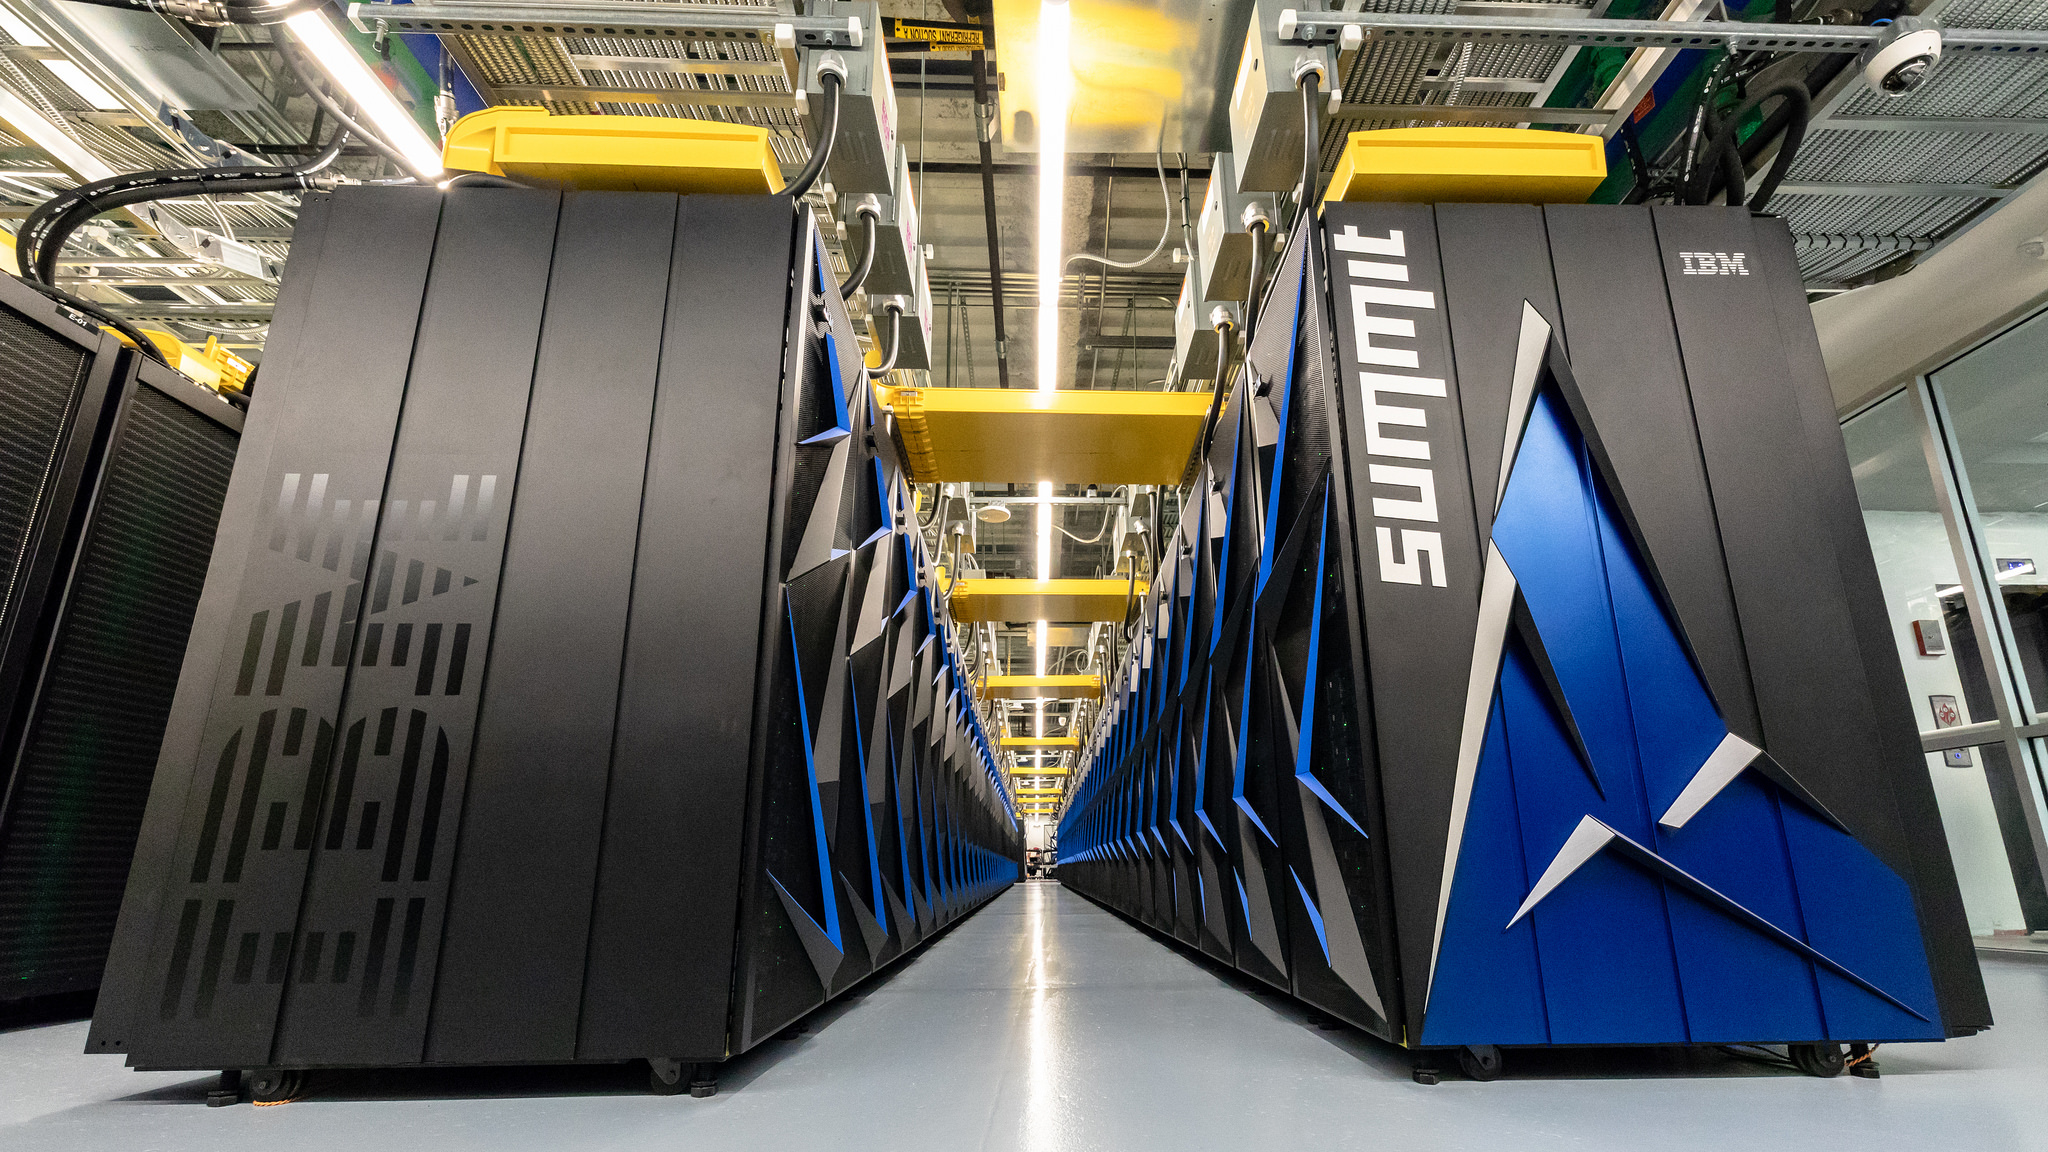 Le Summit d’IBM, l’ordinateur le plus puissant du monde, est capable d’effectuer 122 millions de milliards d’opérations à la seconde. © Oak Ridge National Laboratory, Flickr